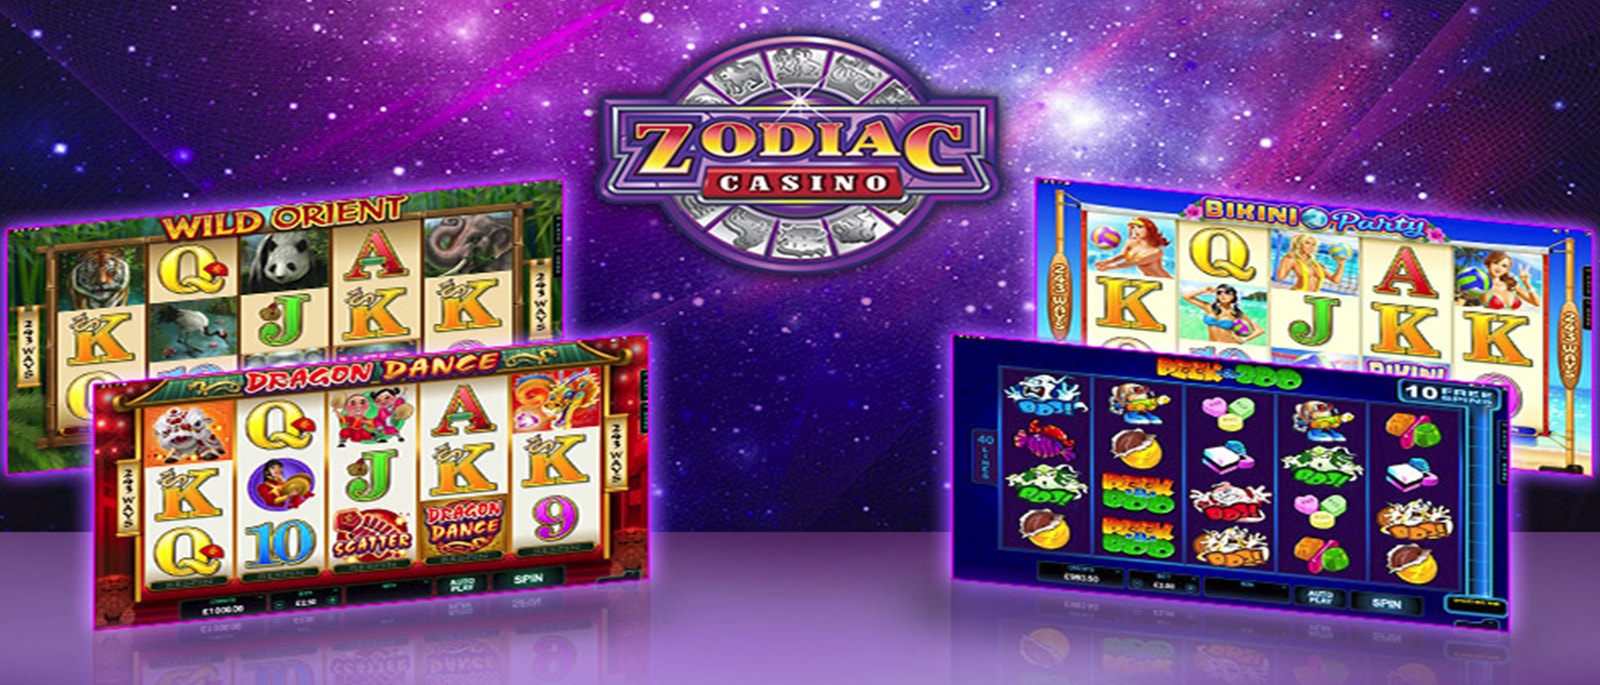 Zodiac Casino Lobby